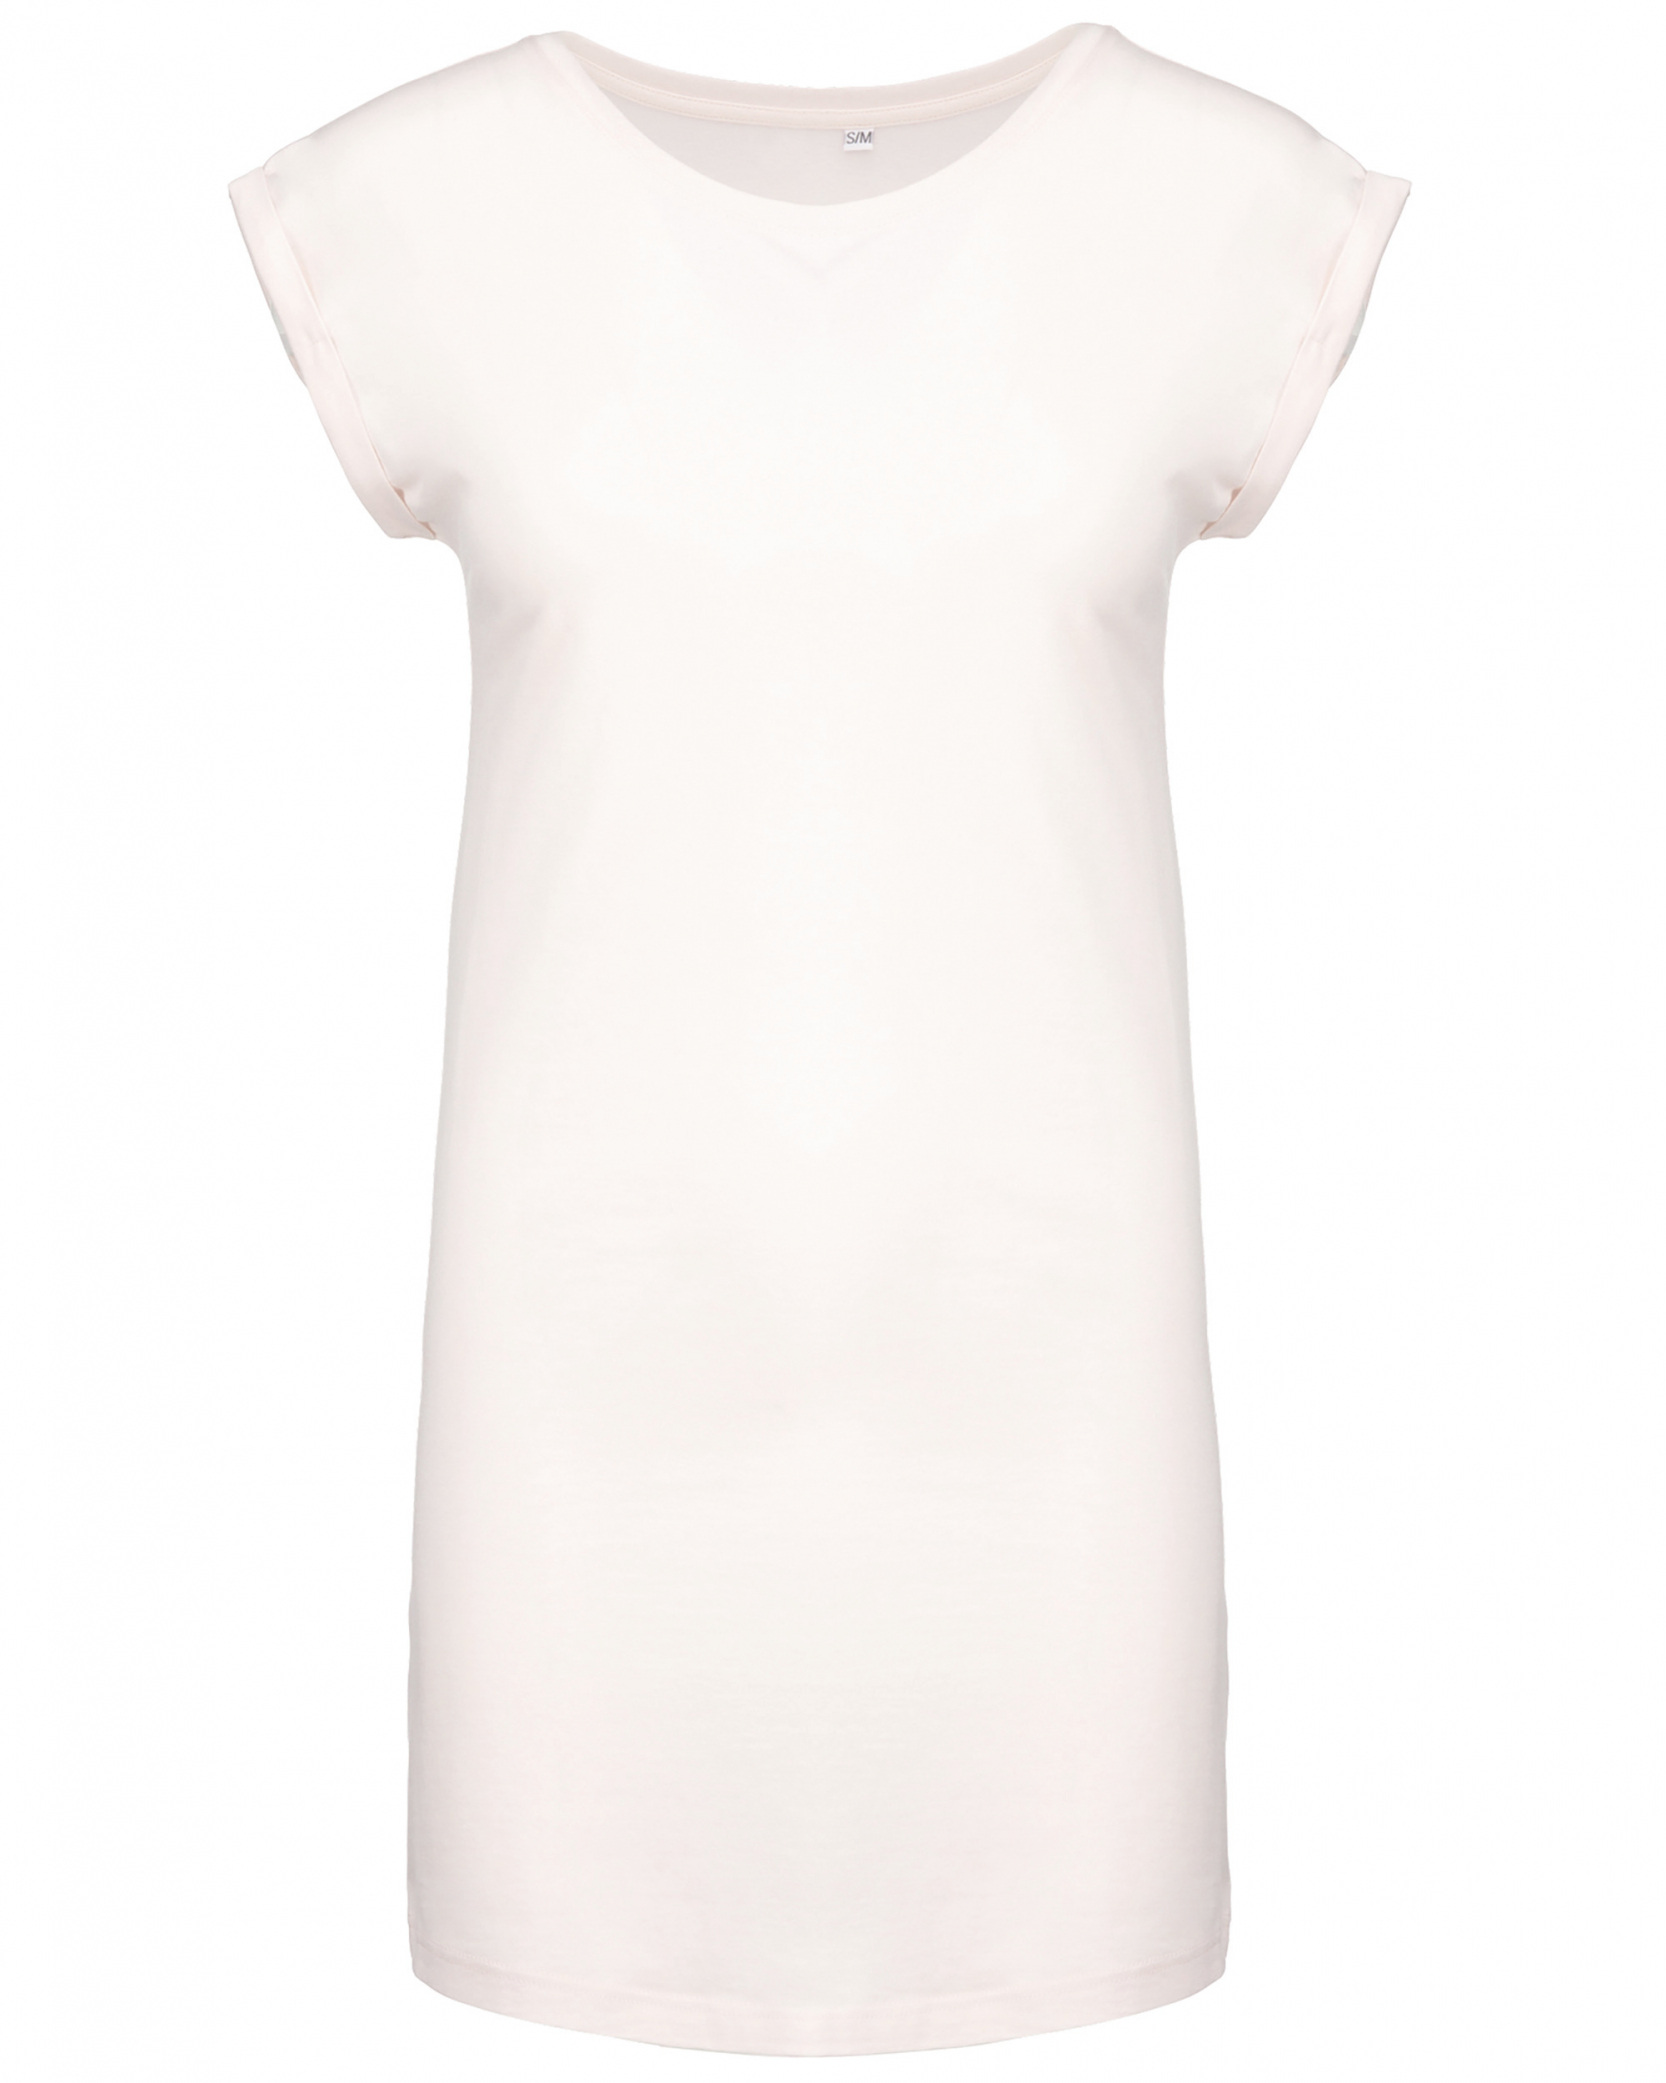 Dámské dlouhé tričko - šaty Barva: bílá, Velikost: S/M